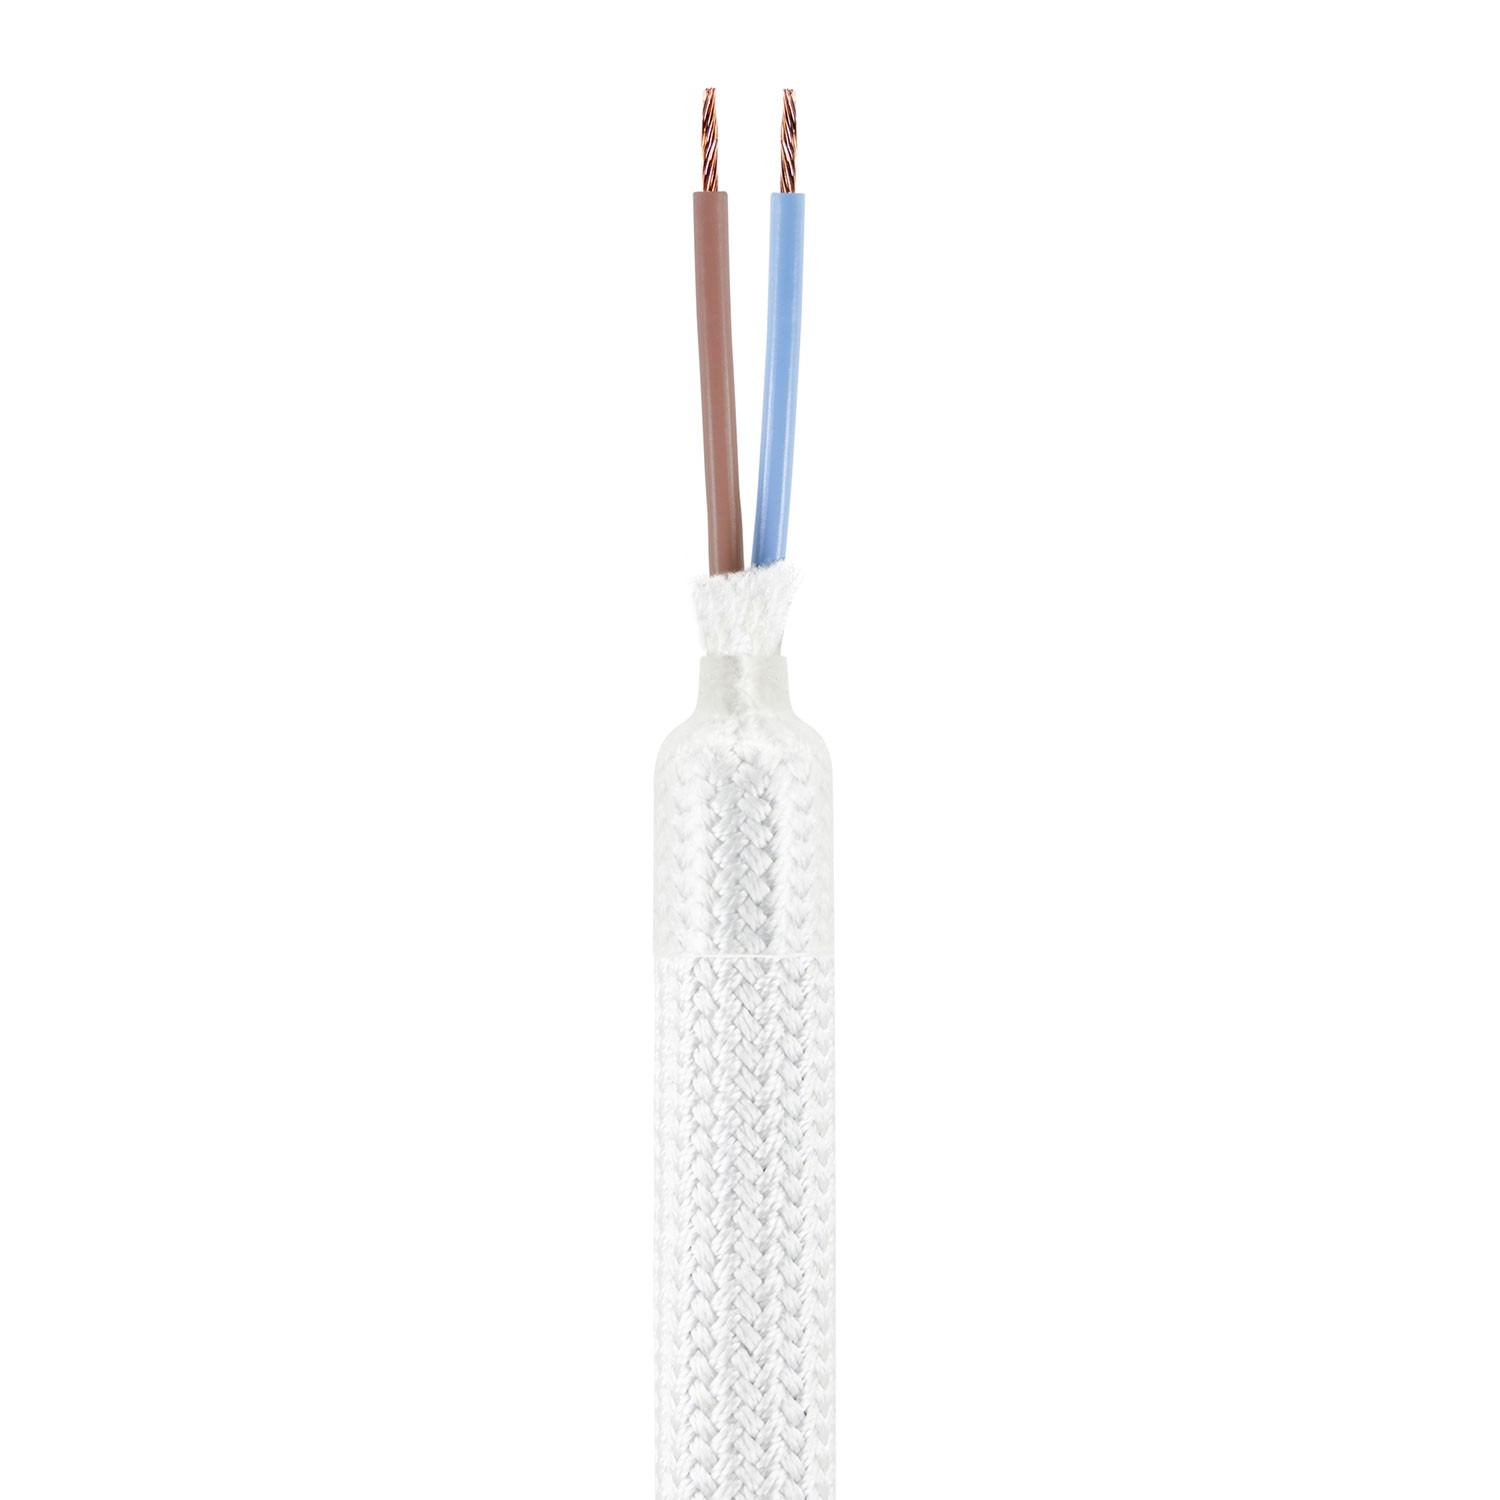 Kit del Tubo articulable "Creative Flex" recubierto en tejido Blanco RM01 con terminales metálicos